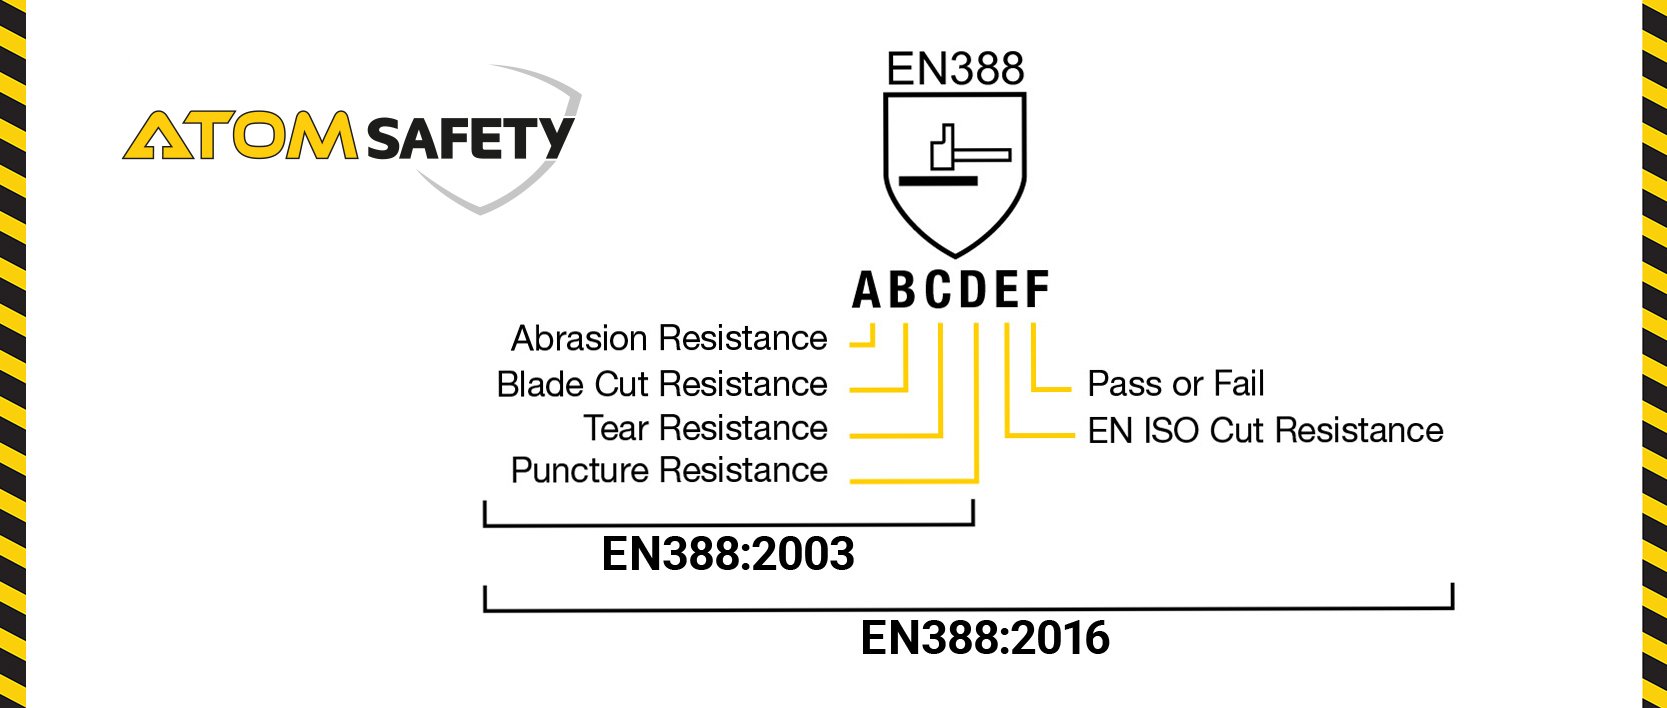 EN388 Safety Standard